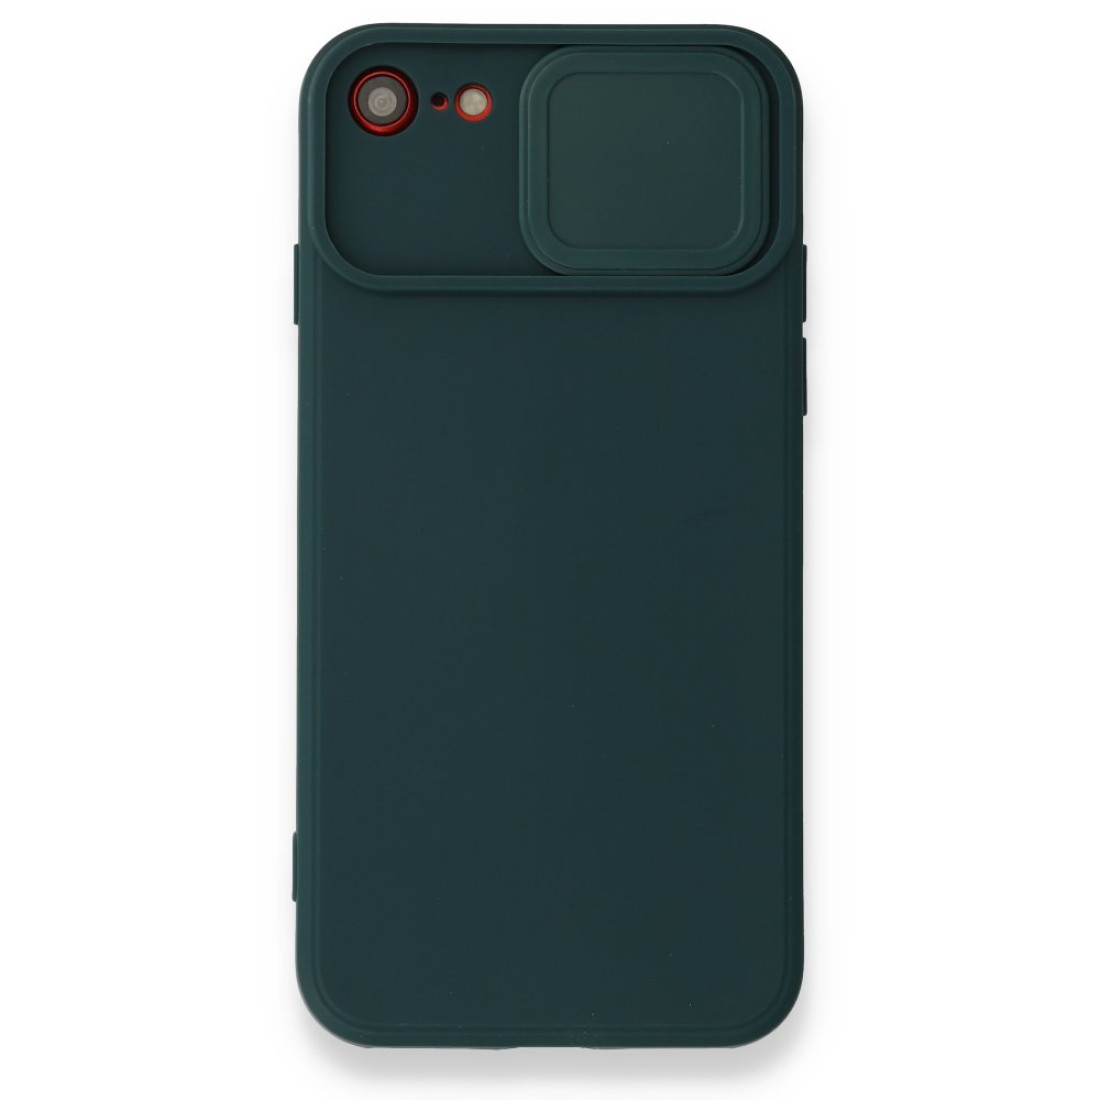 Apple iPhone 7 Kılıf Color Lens Silikon - Yeşil